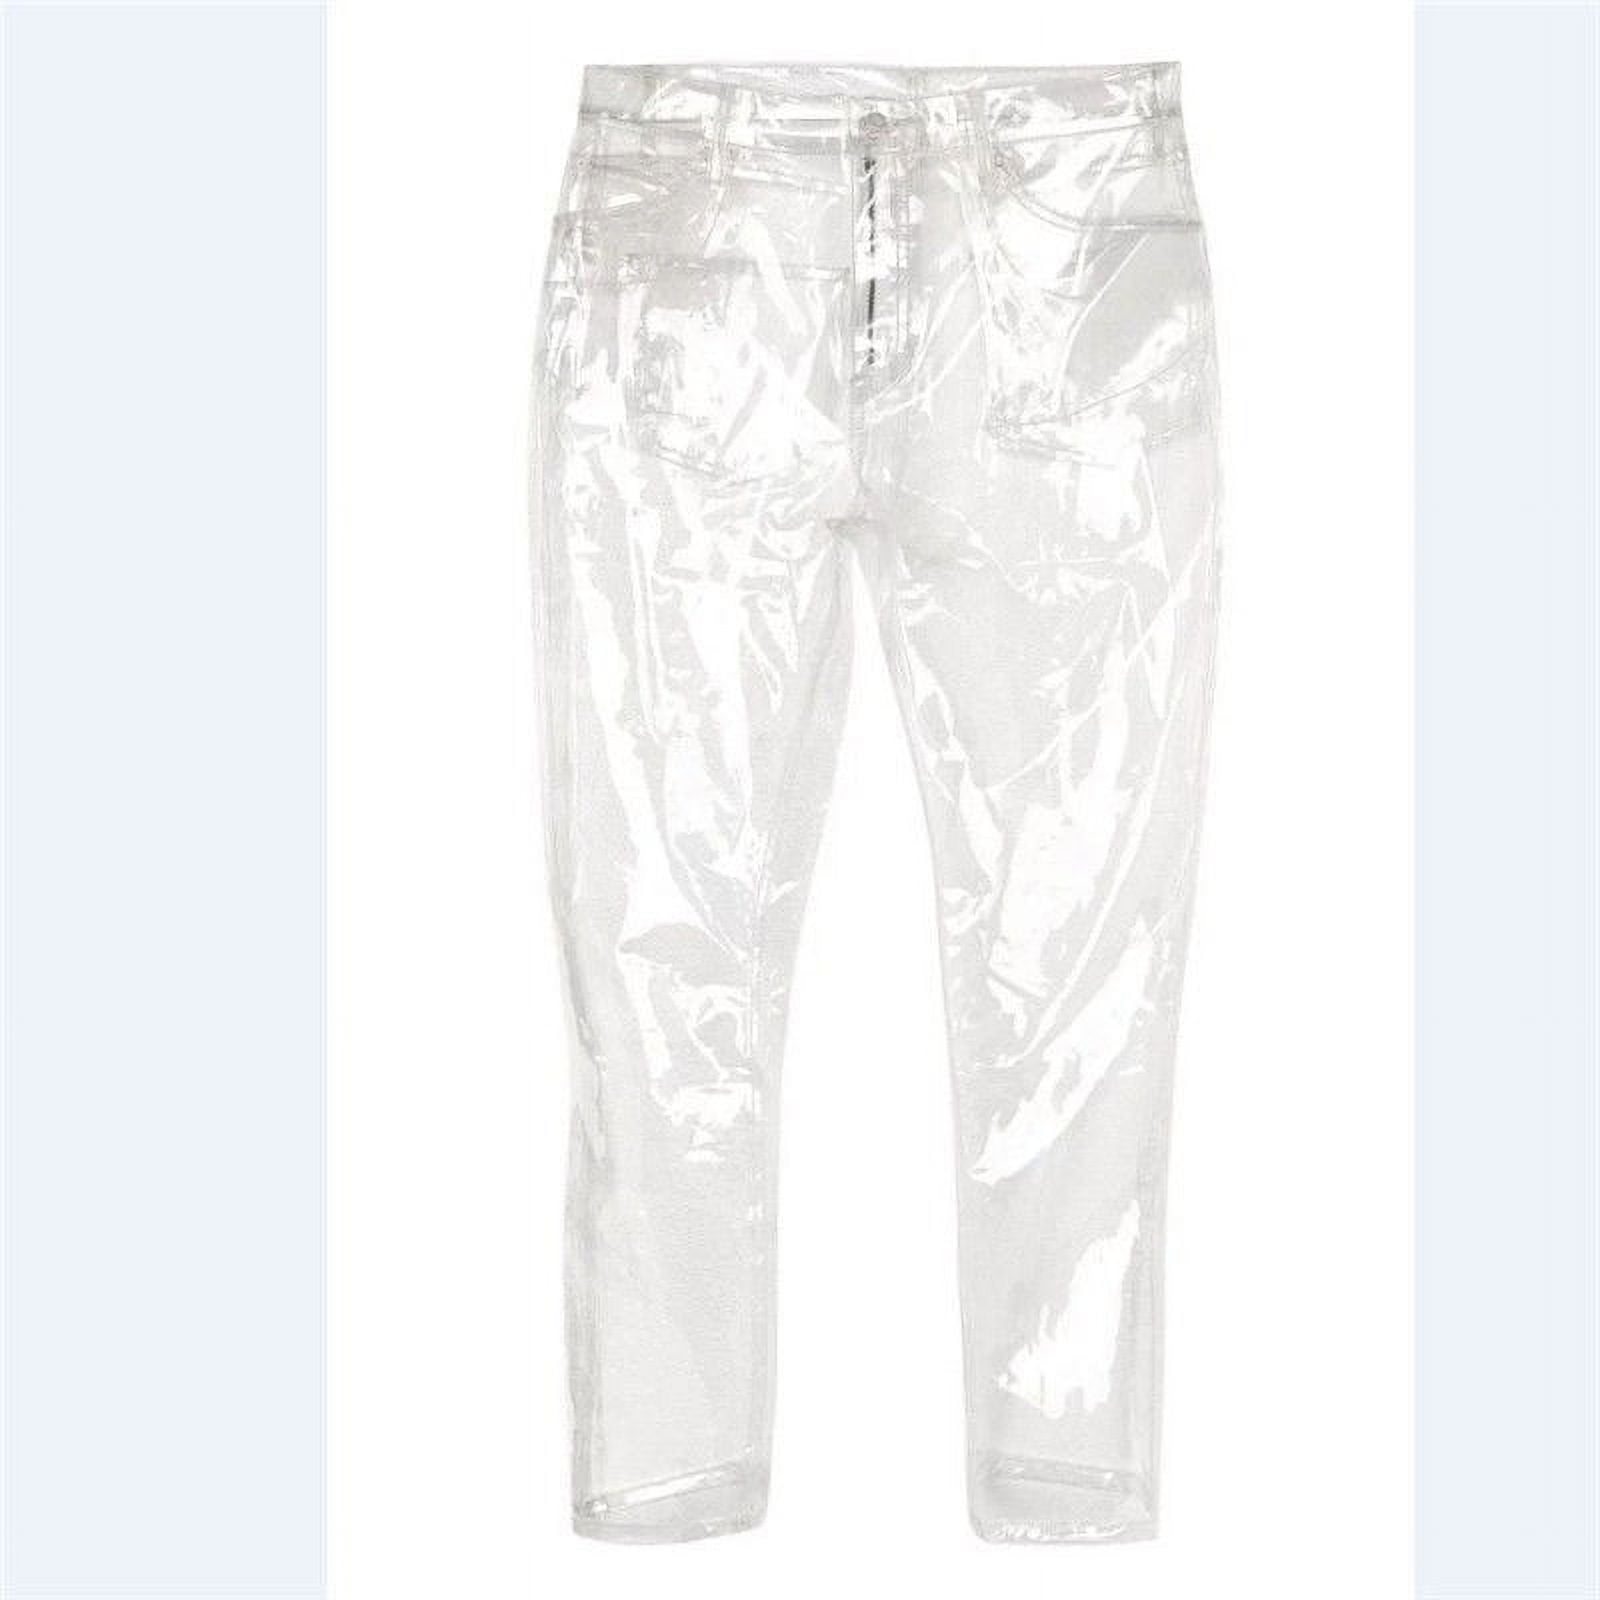 PVC Transparent Plastic Trousers Jogging Pants Glass Clear